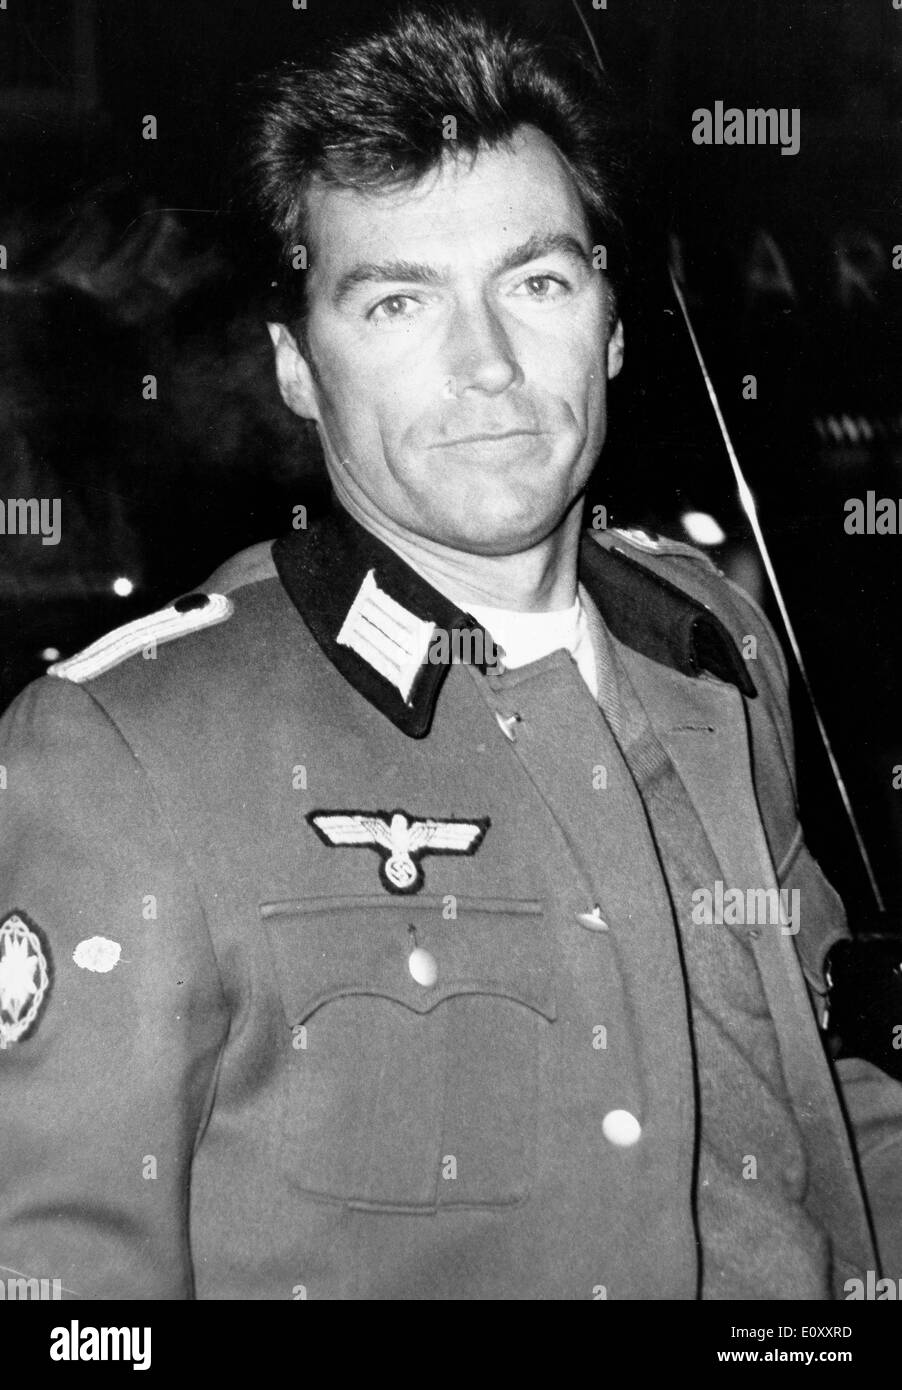 Attore Clint Eastwood vestito in uniforme militare Foto Stock